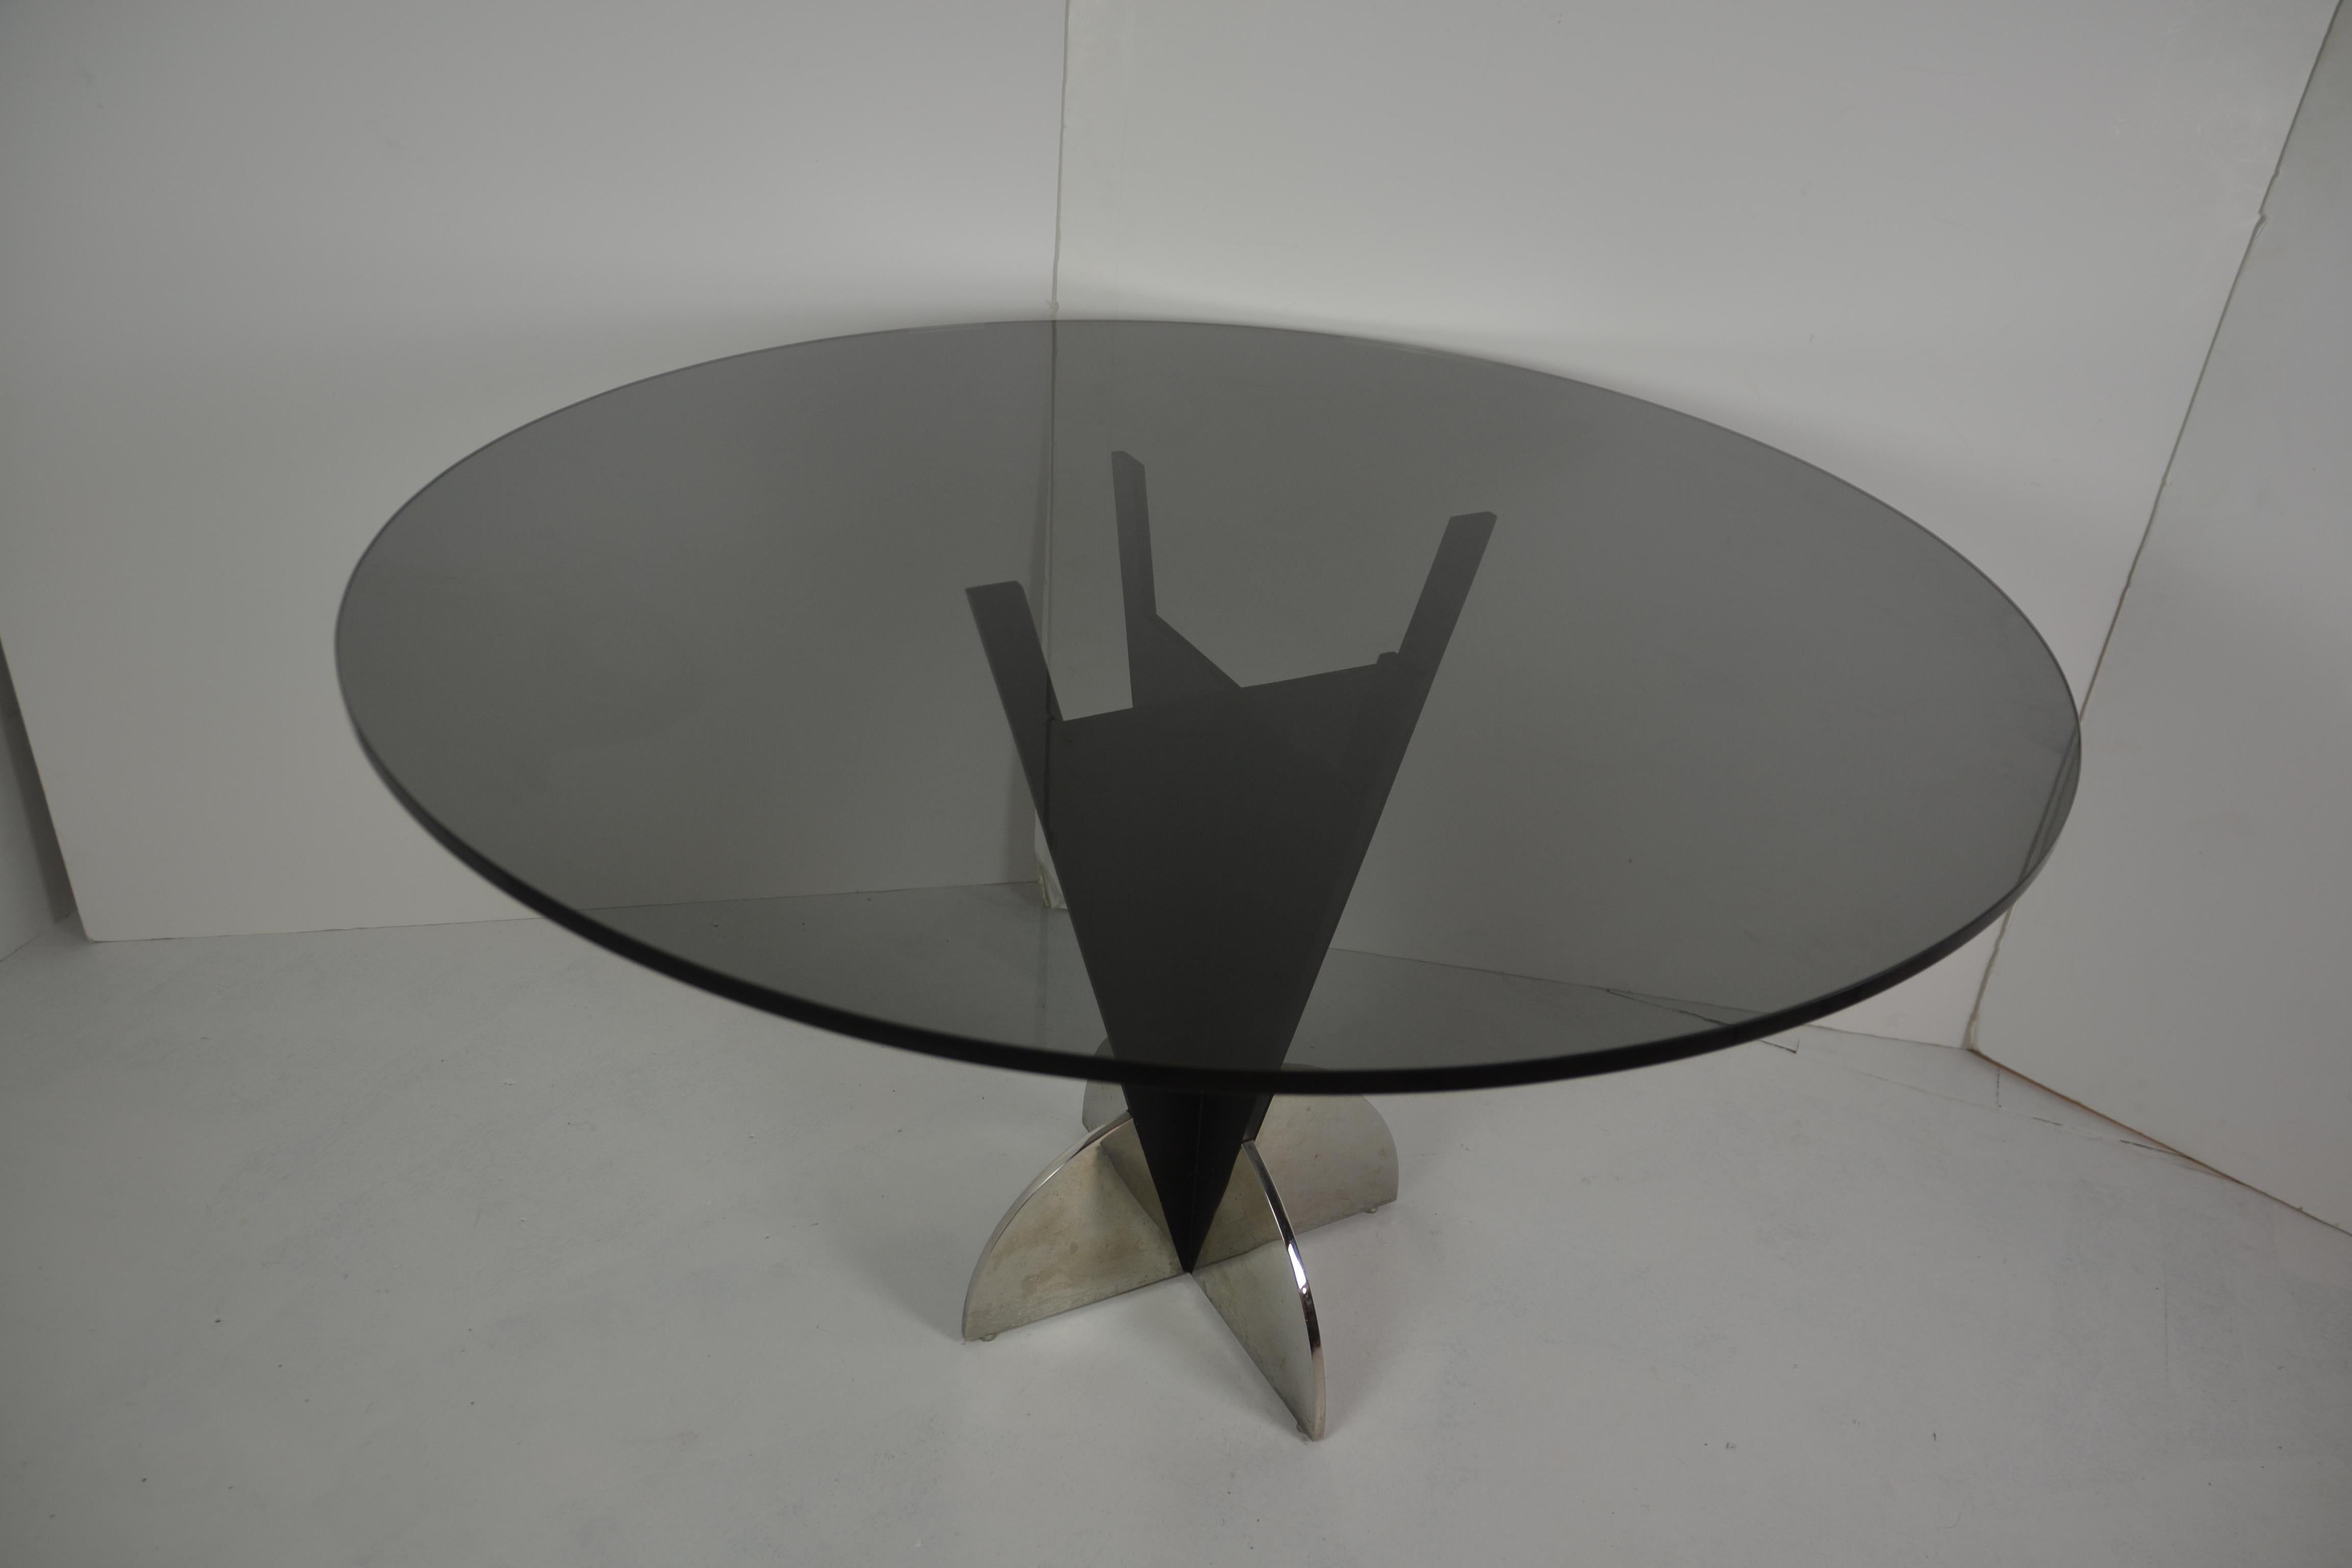 Table italienne de forme ronde en verre fumé de qualité supérieure. La base est en métal massif et chromé.